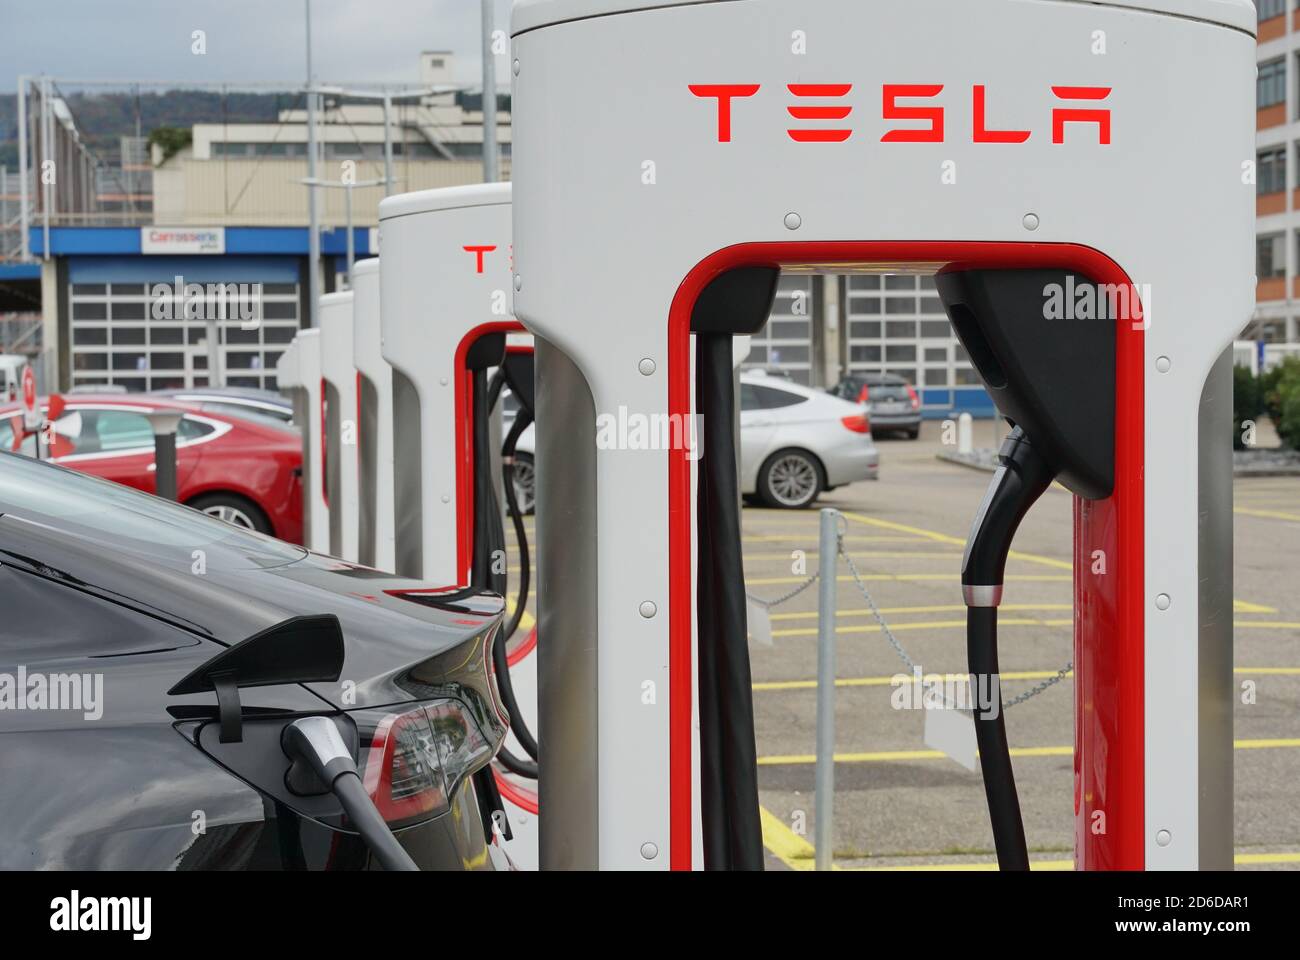 Stazioni di ricarica elettriche Tesla disposte in fila. Sono situati in una zona industriale alla periferia di Zurigo e possono essere utilizzati senza fermate. Foto Stock